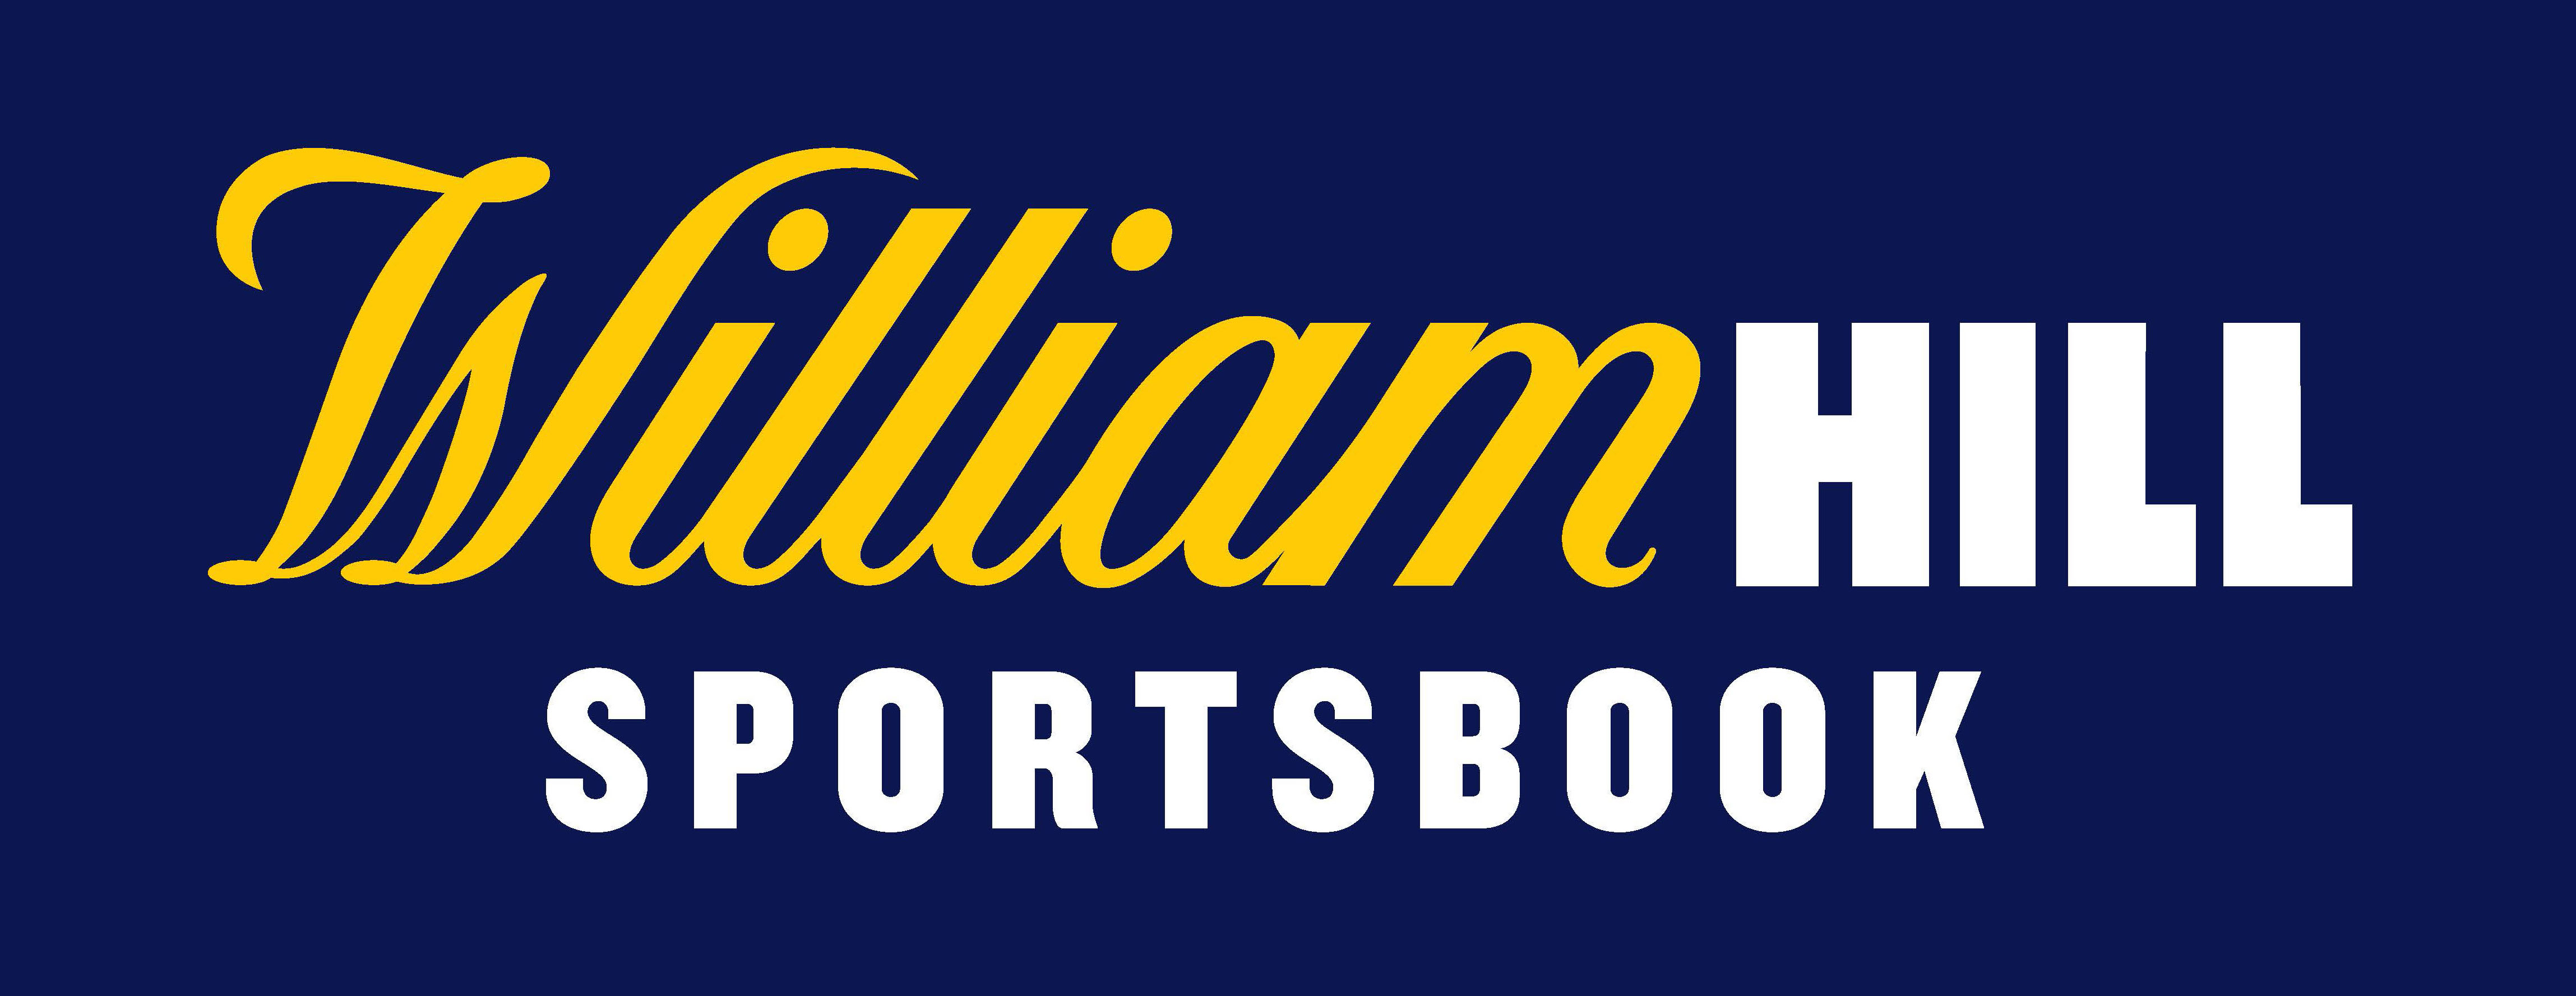 William Hills Sportsbook